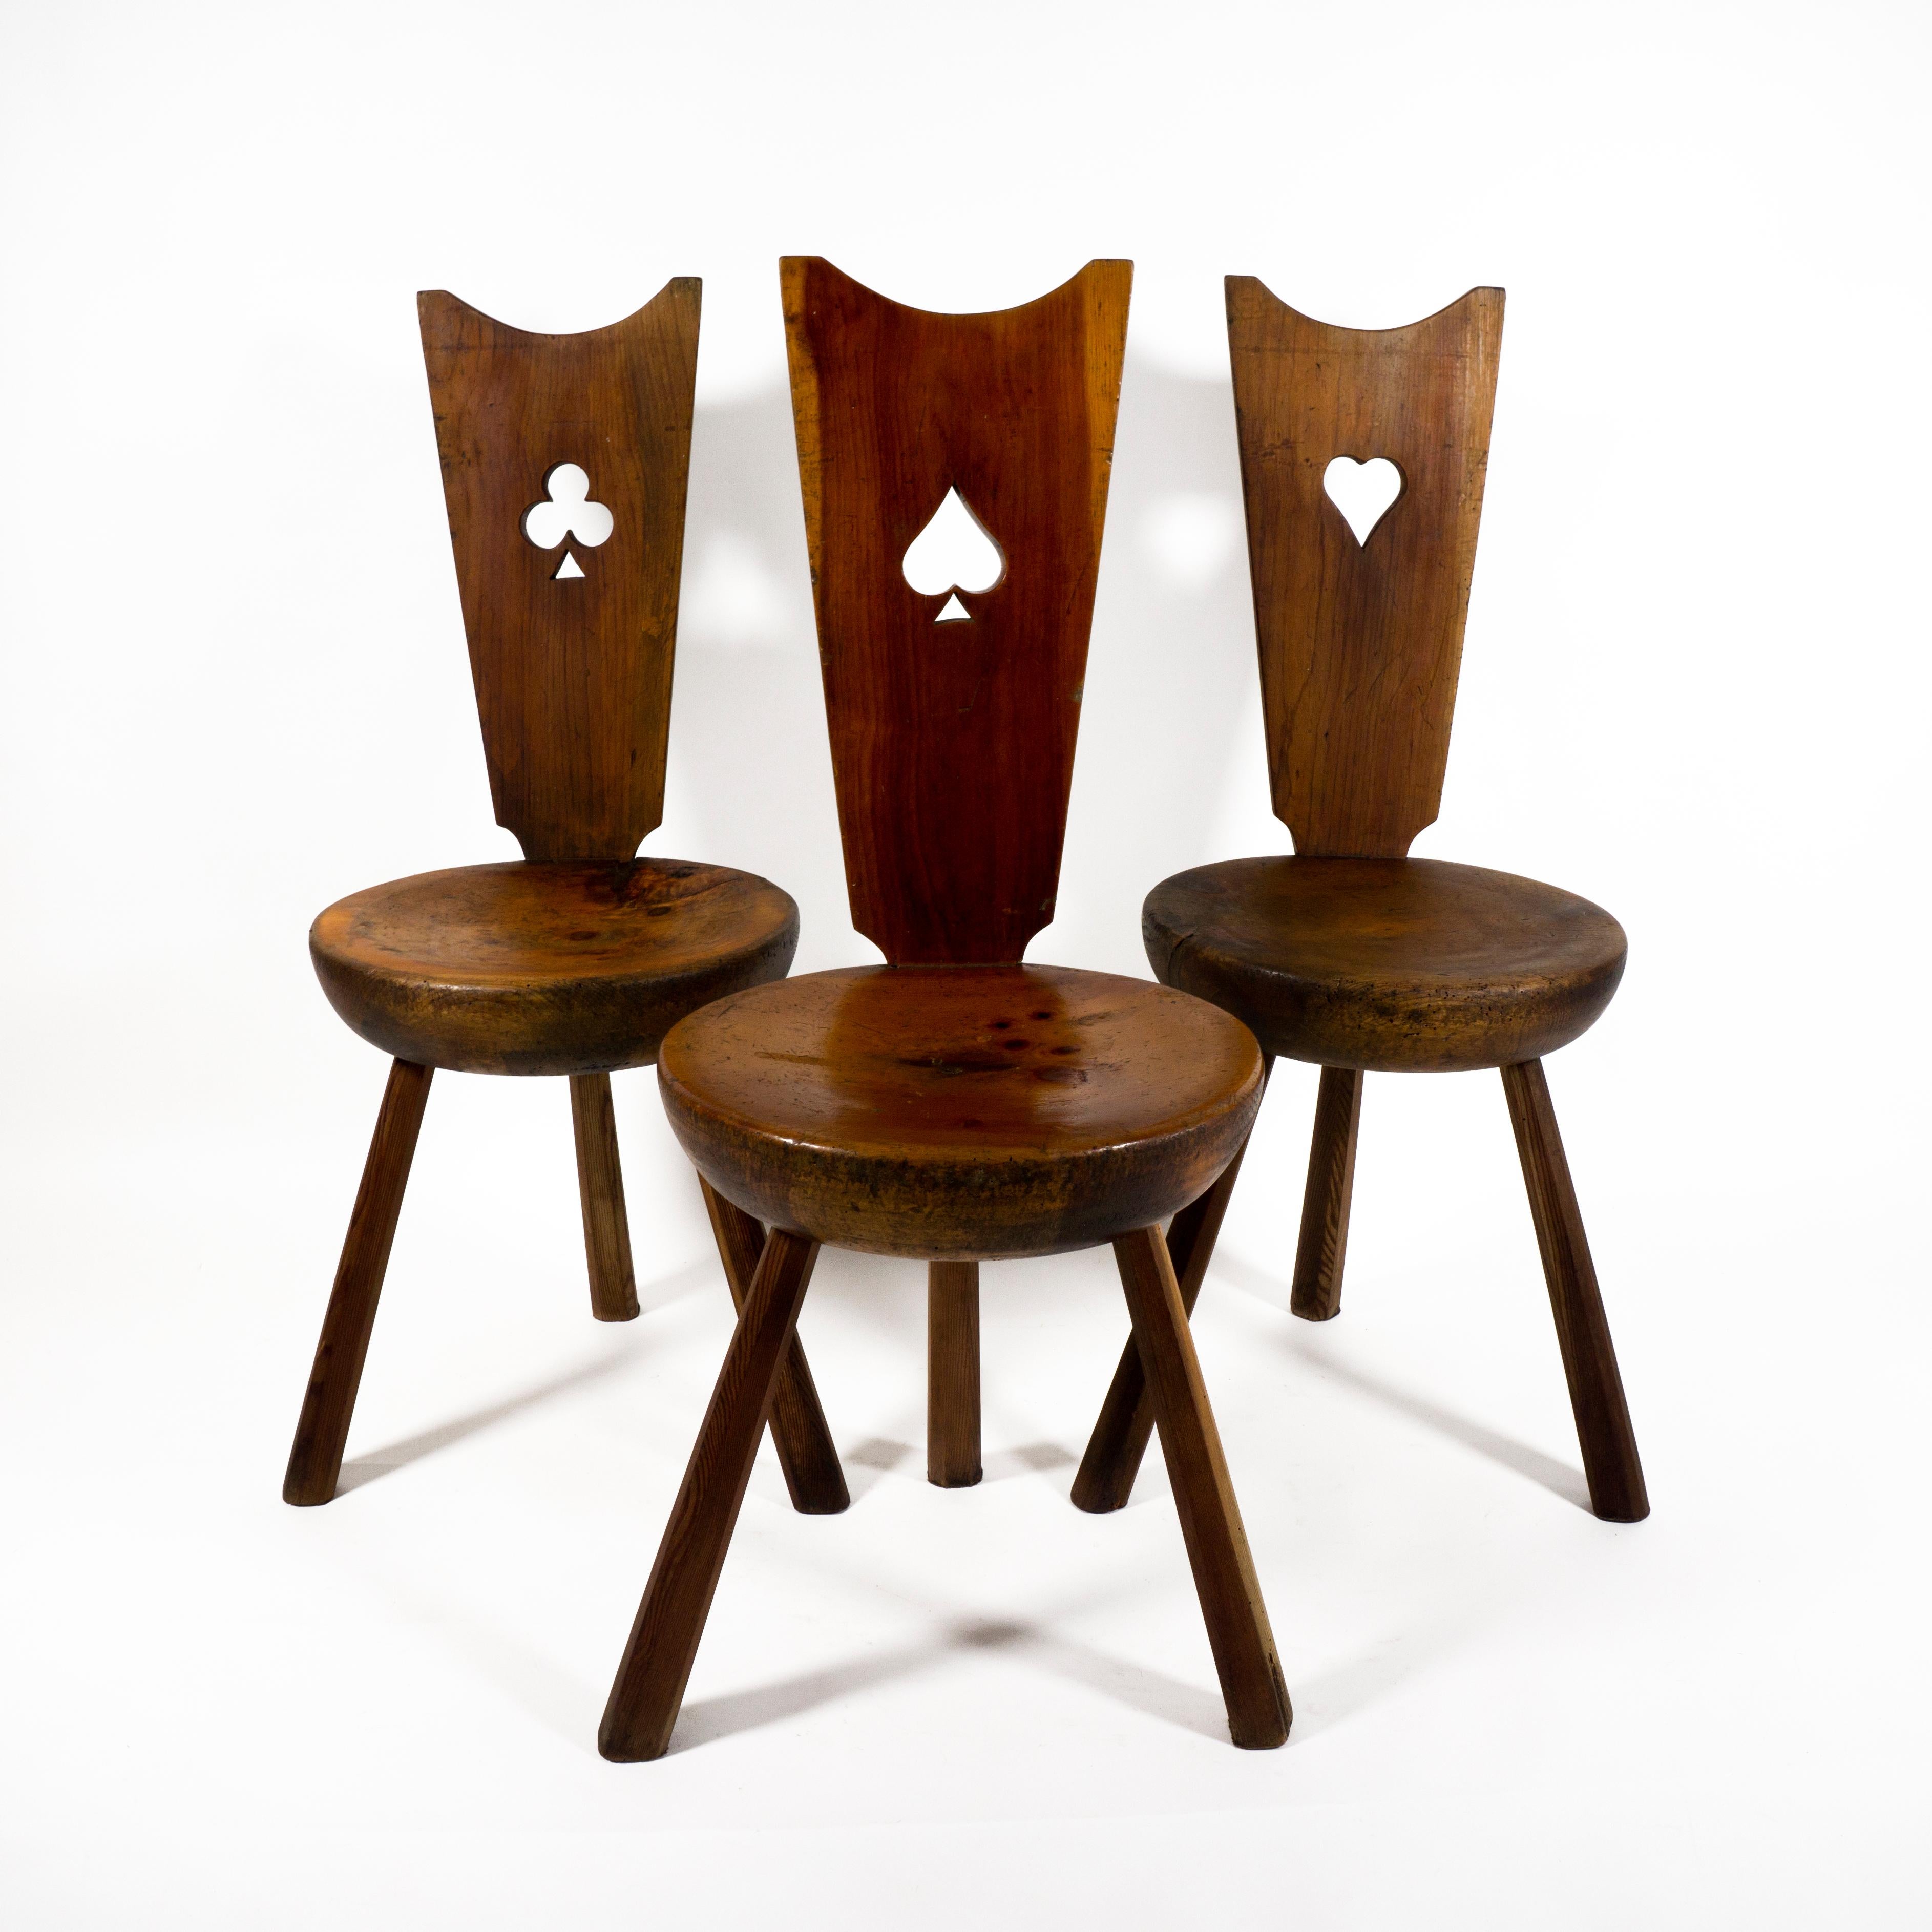 Schöner Satz von 3 italienischen Massivholz-Dreibeinstühlen mit wunderbarer Patina - original Mid Century.
Jeder Stuhl ist sehr robust und stabil. Nicht wackelig und für die Ewigkeit gebaut.
Die Spielkartenstühle (Kreuz, Pik und Herz) sind